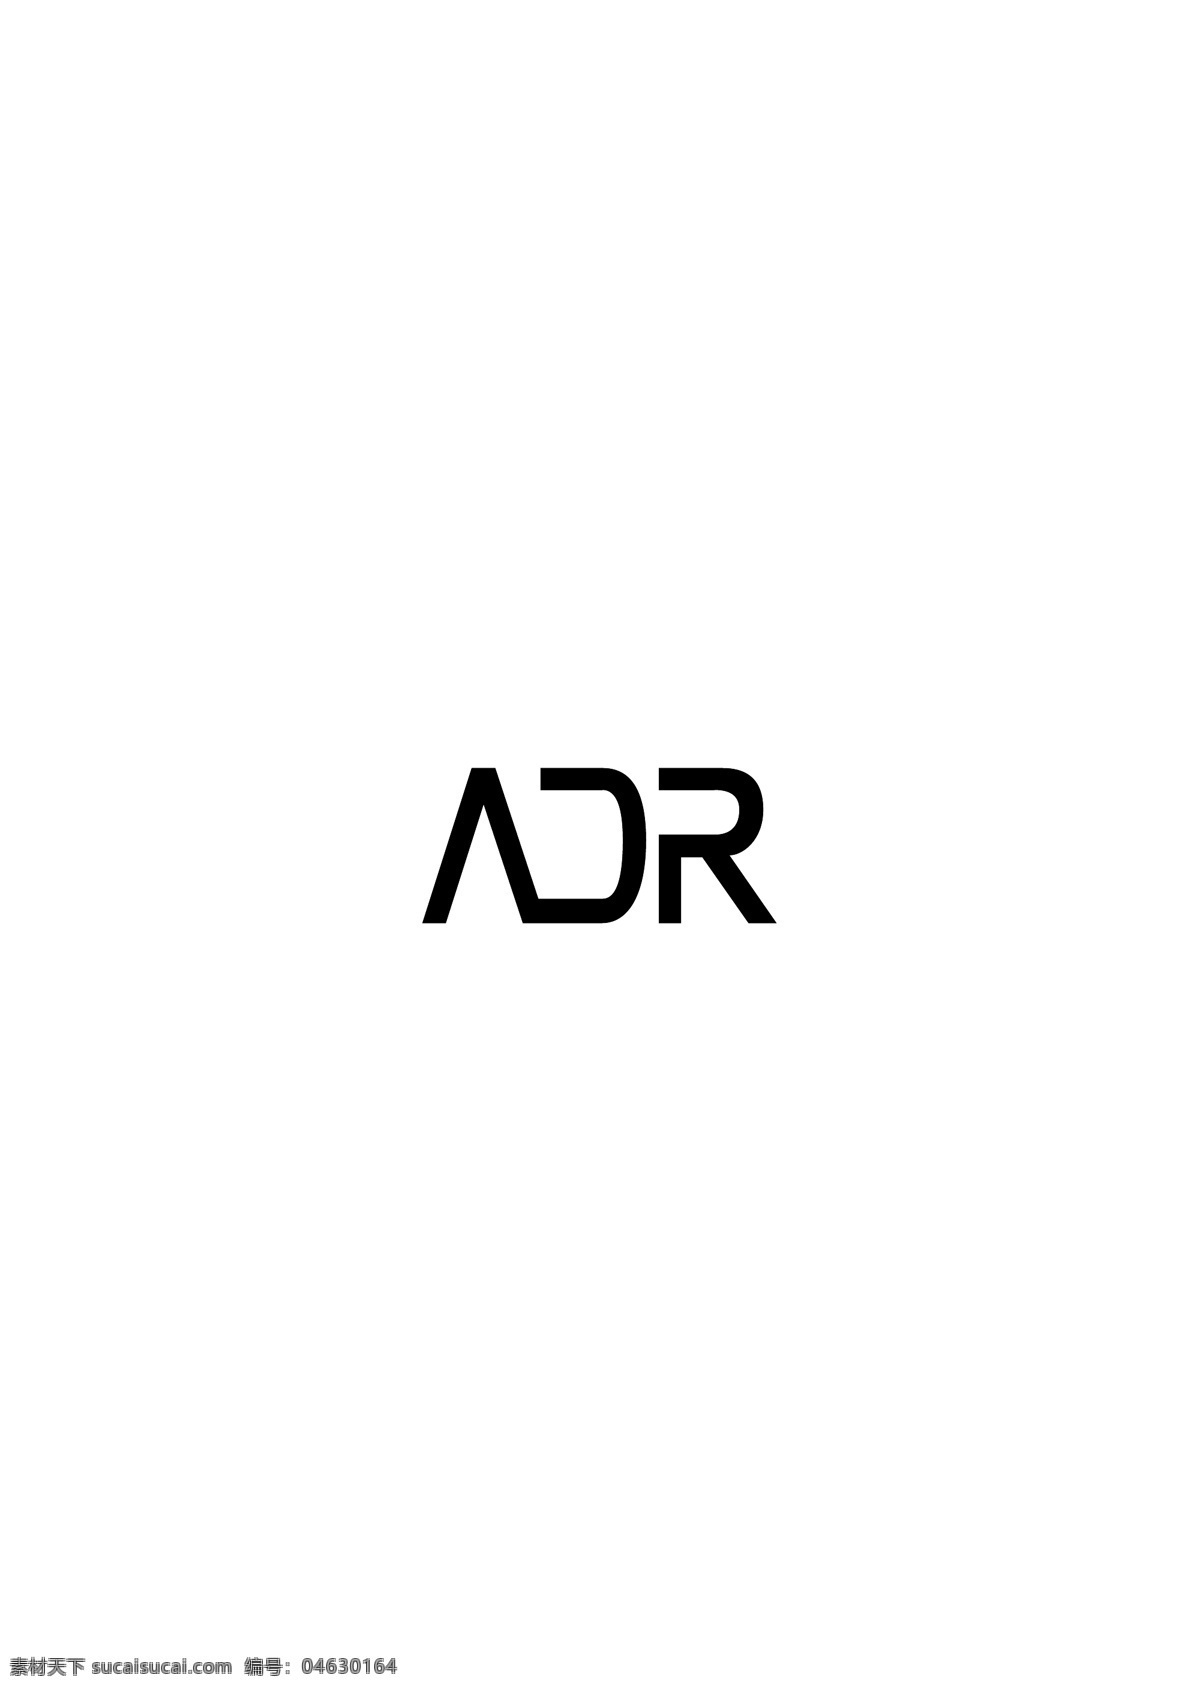 adr logo 设计欣赏 体育赛事 标志 标志设计 欣赏 矢量下载 网页矢量 商业矢量 logo大全 红色